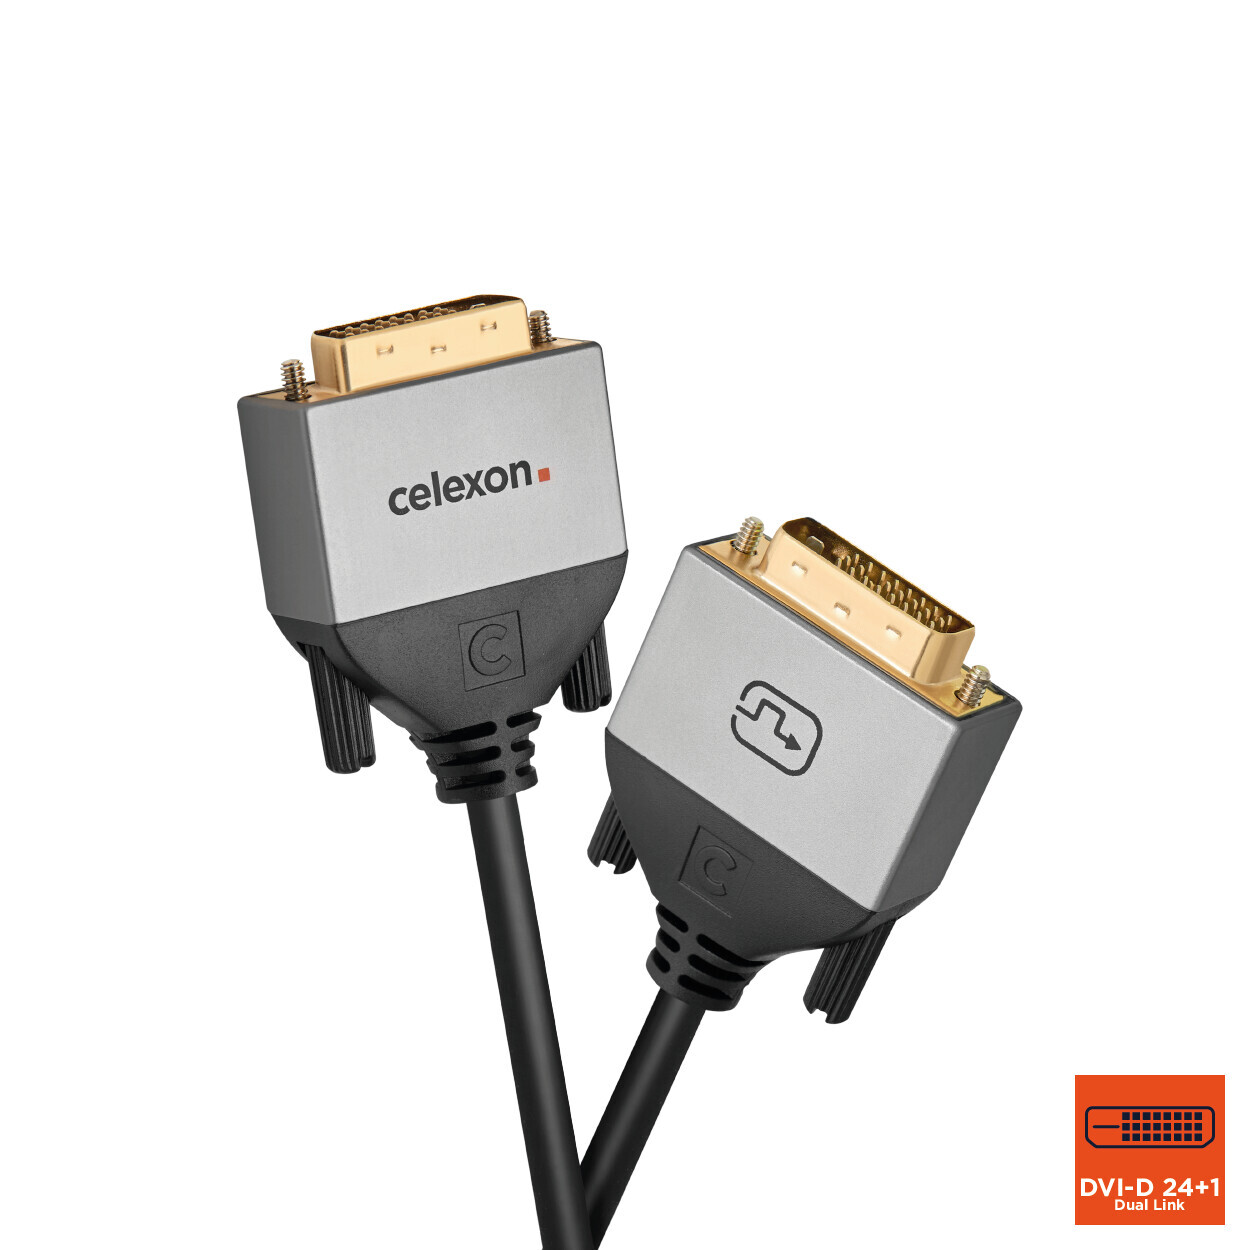 Vorschau: celexon DVI Dual Link Kabel 7,5m - Professional Line